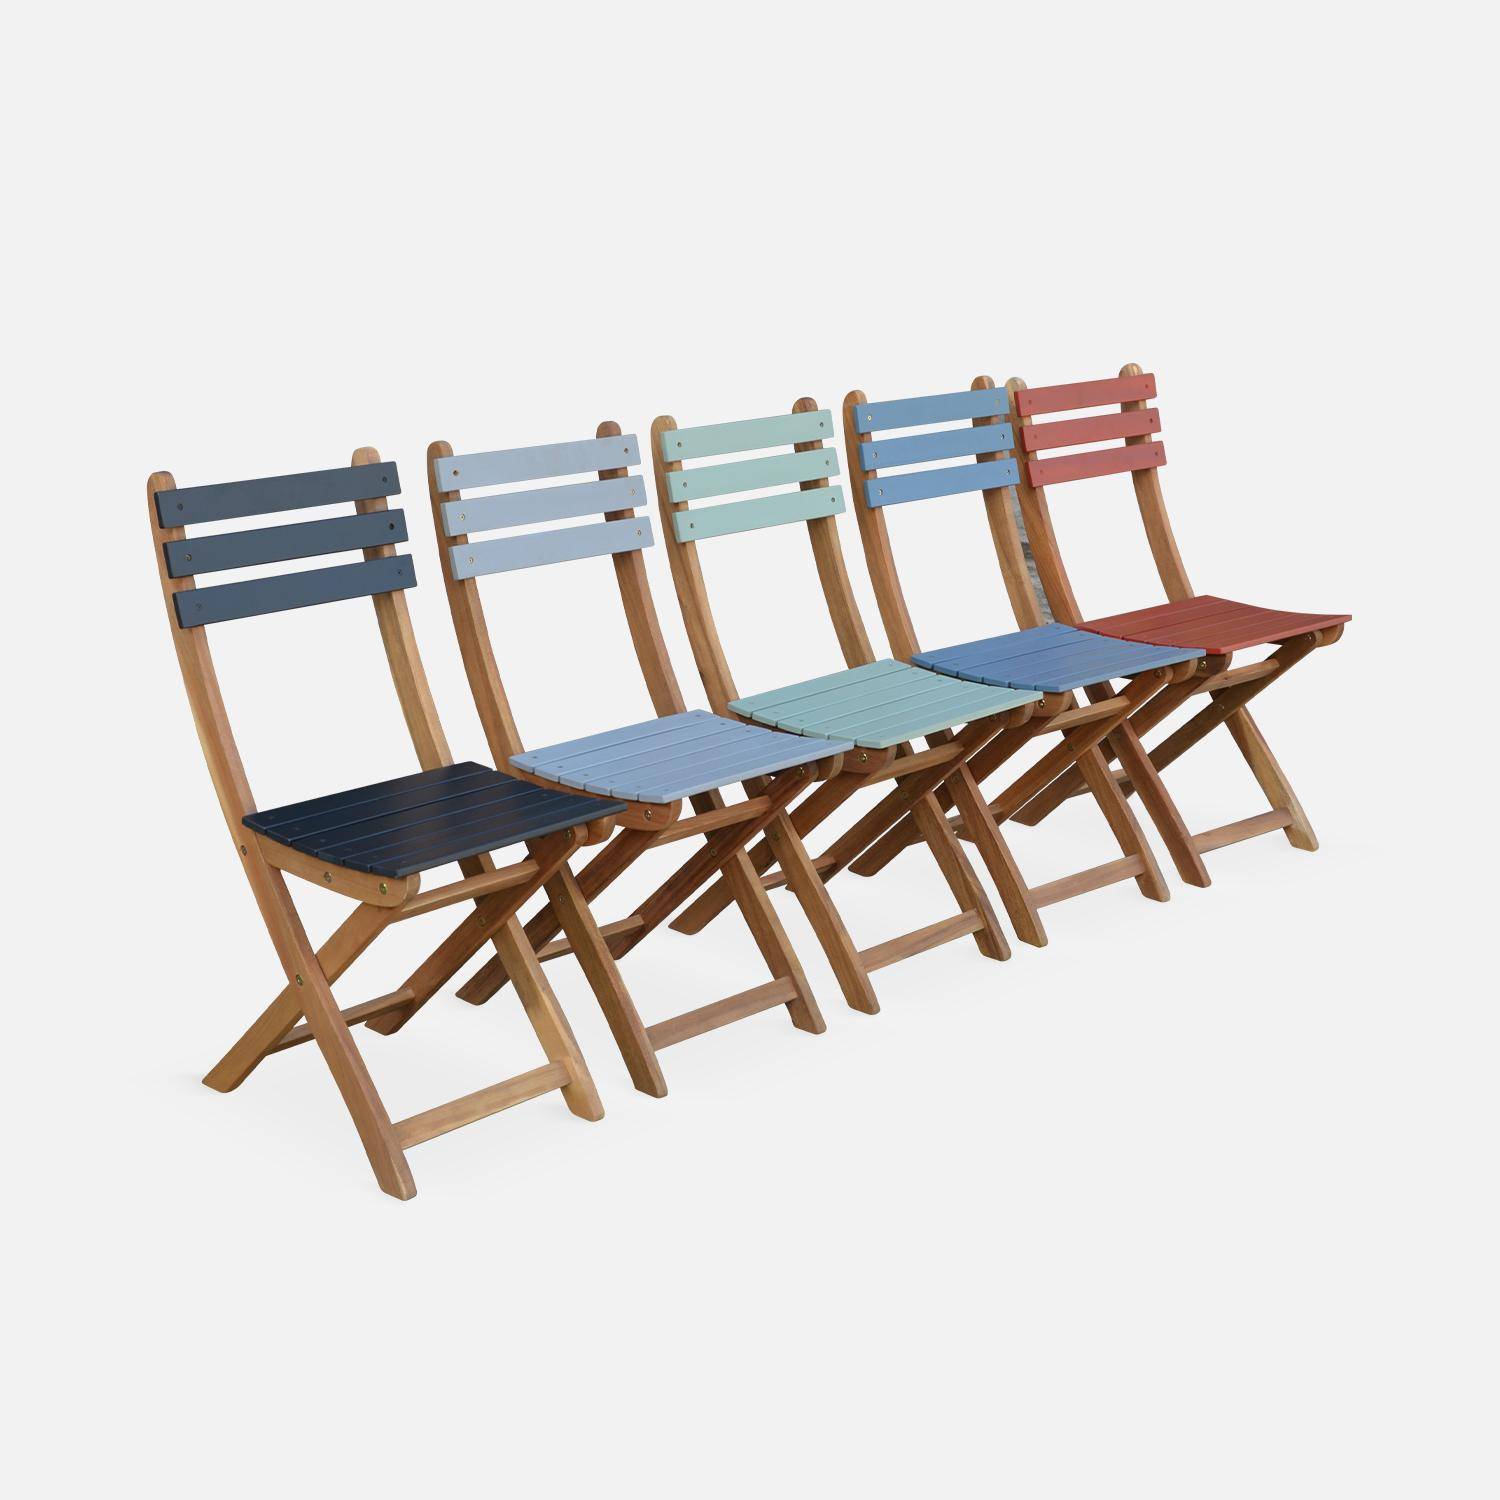 Conjunto de jardín de madera Bistro 60x60cm - Barcelona - verde grisáceo, mesa plegable bicolor con 2 sillas plegables, acacia,sweeek,Photo8